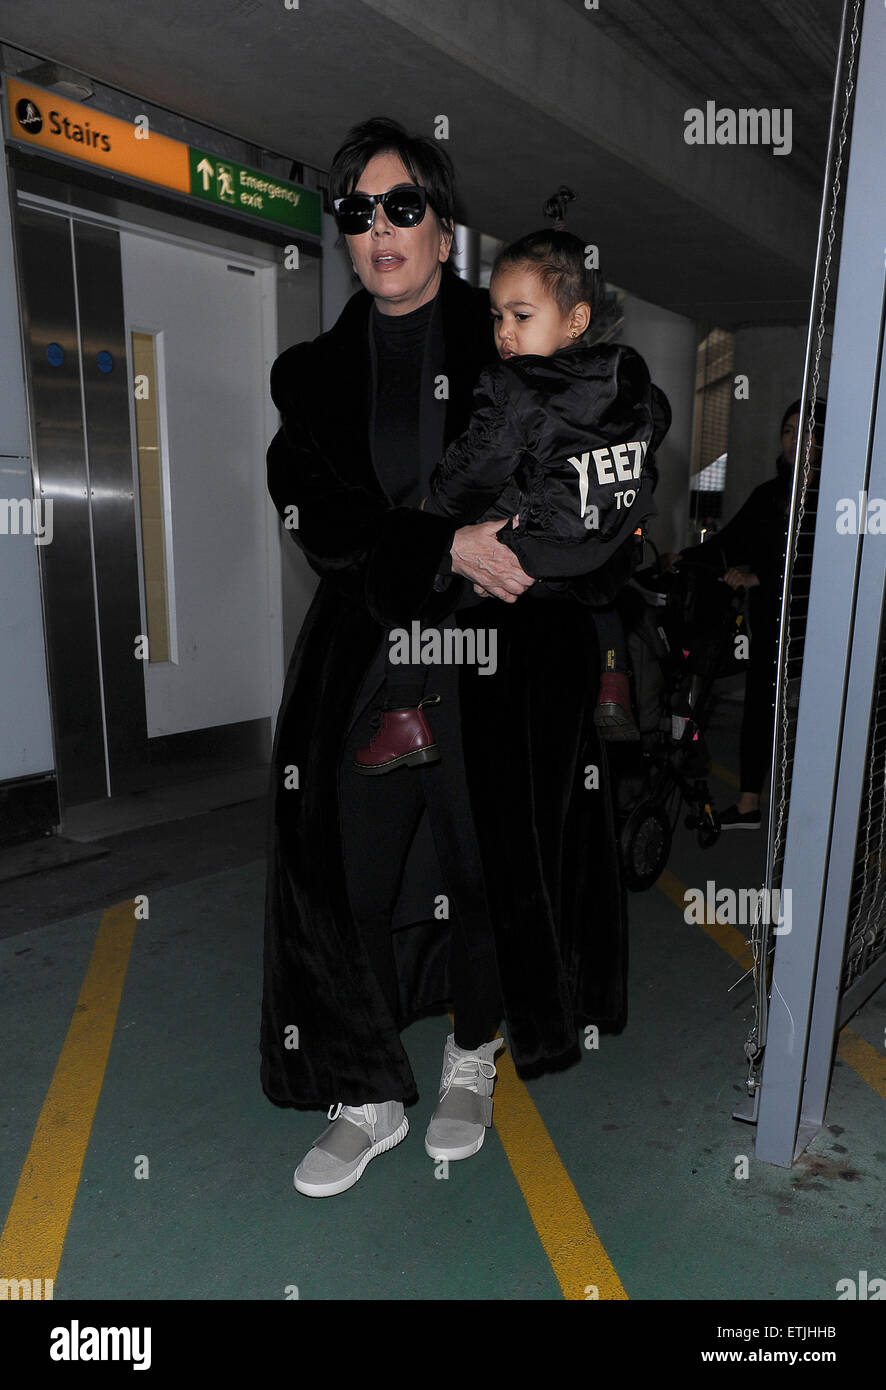 Kris Jenner, vistiendo un par de West Yeezy Originales Adidas x 750 Boost, llega aeropuerto Heathrow llevando bebé North West, quien llevaba una chaqueta de bombardero Yeezus Tour' en